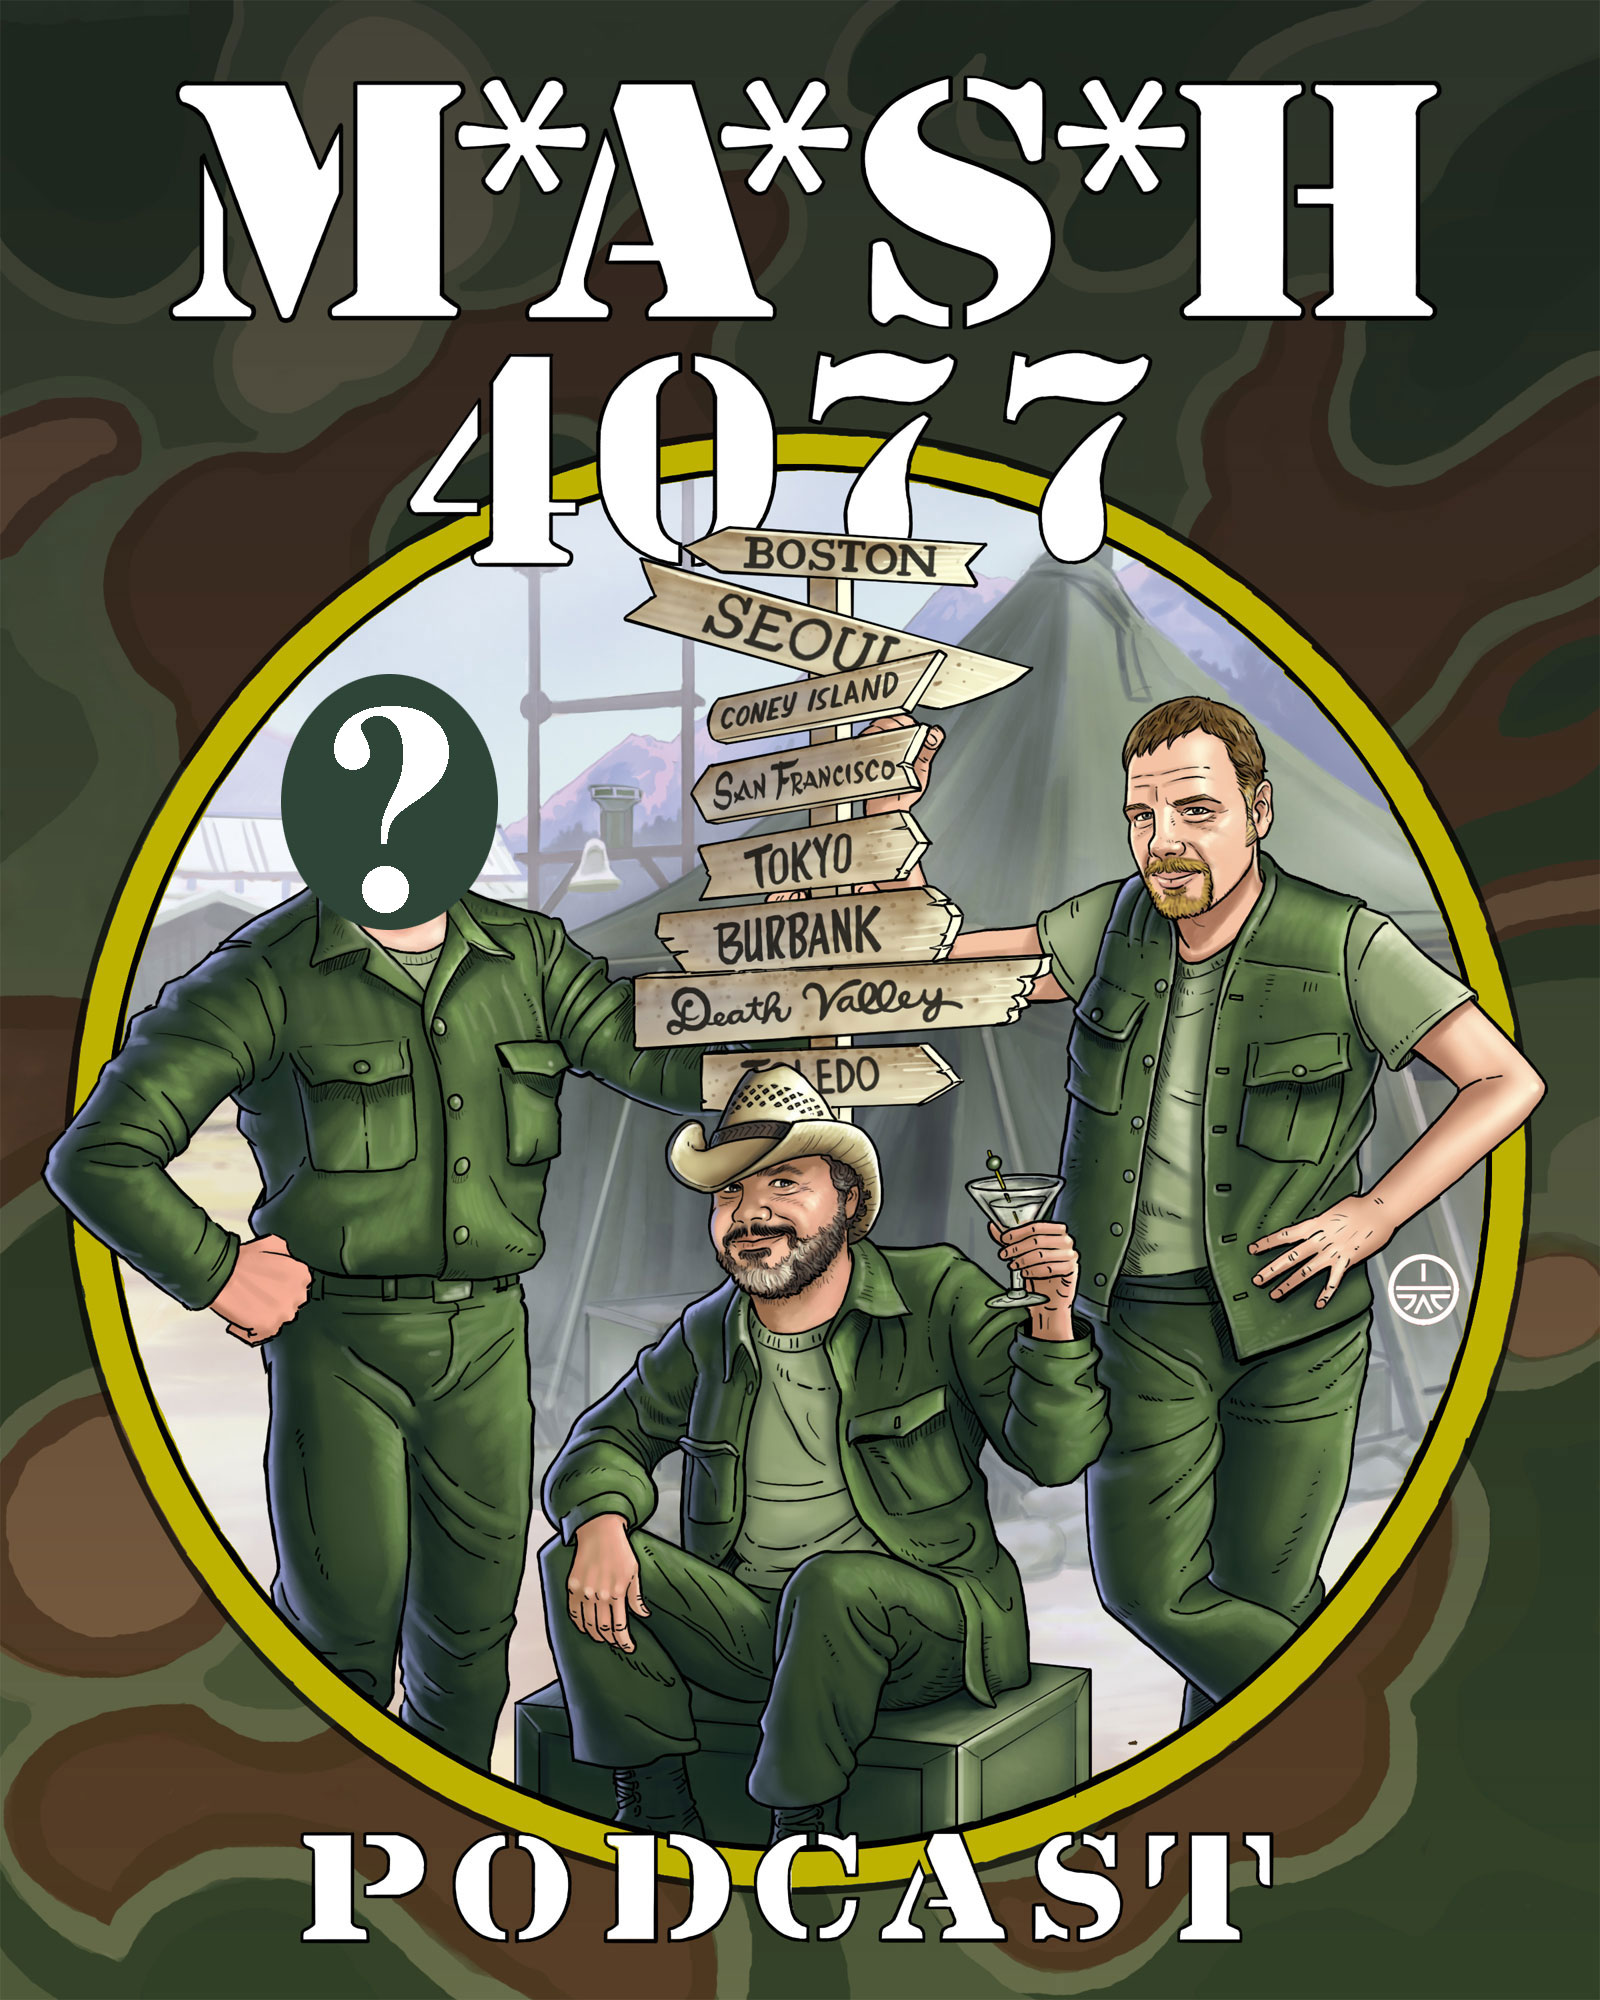 MASH 4077 Podcast Episode 138